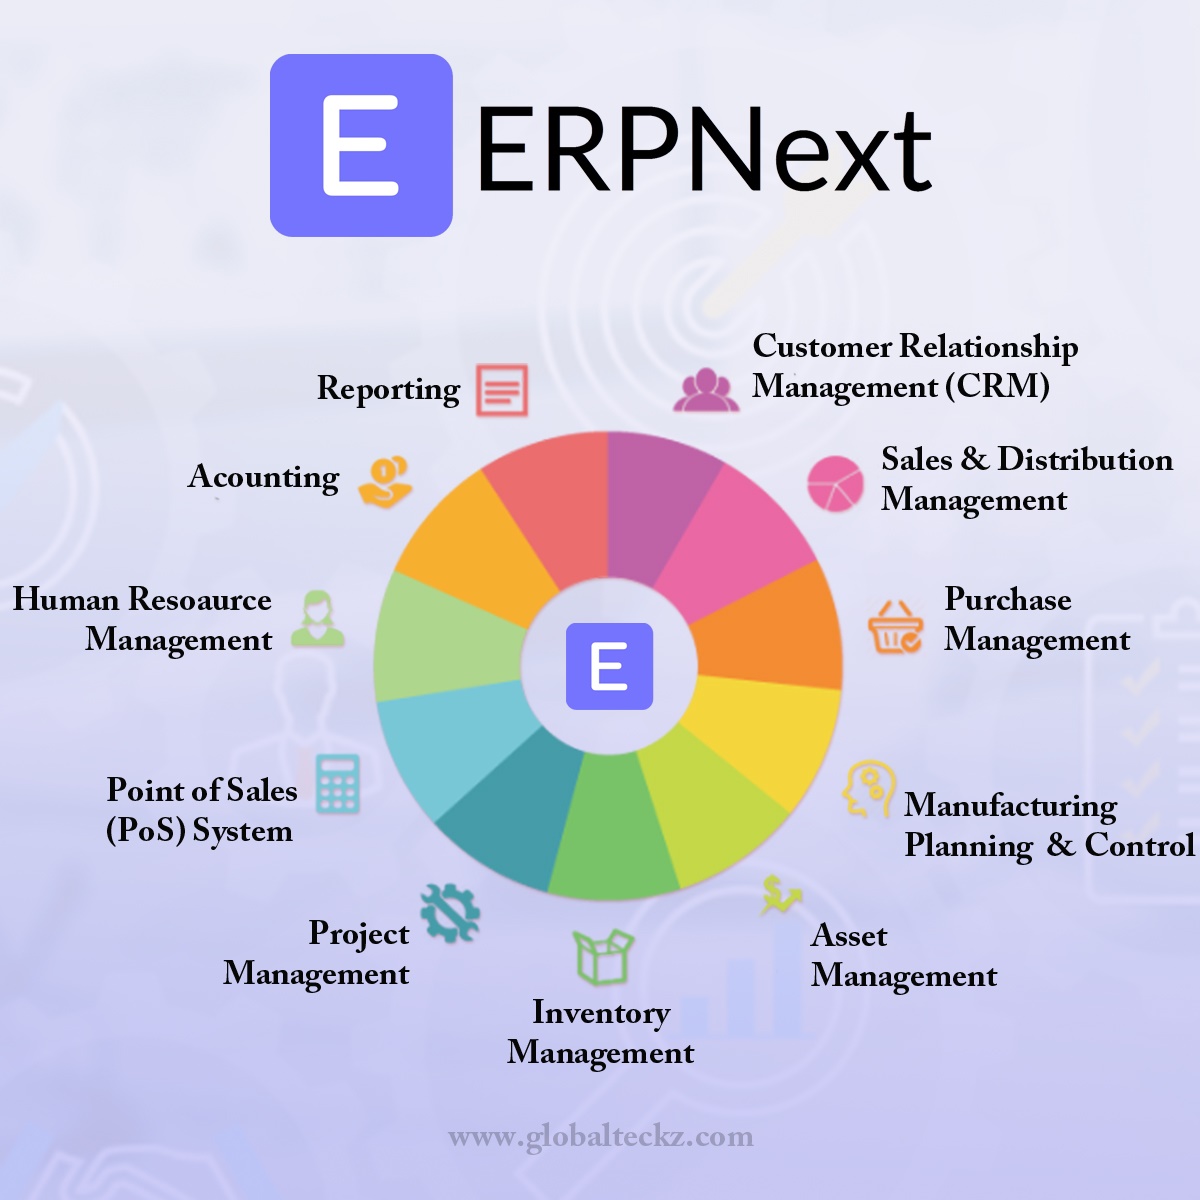 phần mềm ERP, doanh nghiệp vừa và nhỏ, quản lý doanh nghiệp, quản lý tài chính, quản lý bán hàng, quản lý kho, quản lý nhân sự